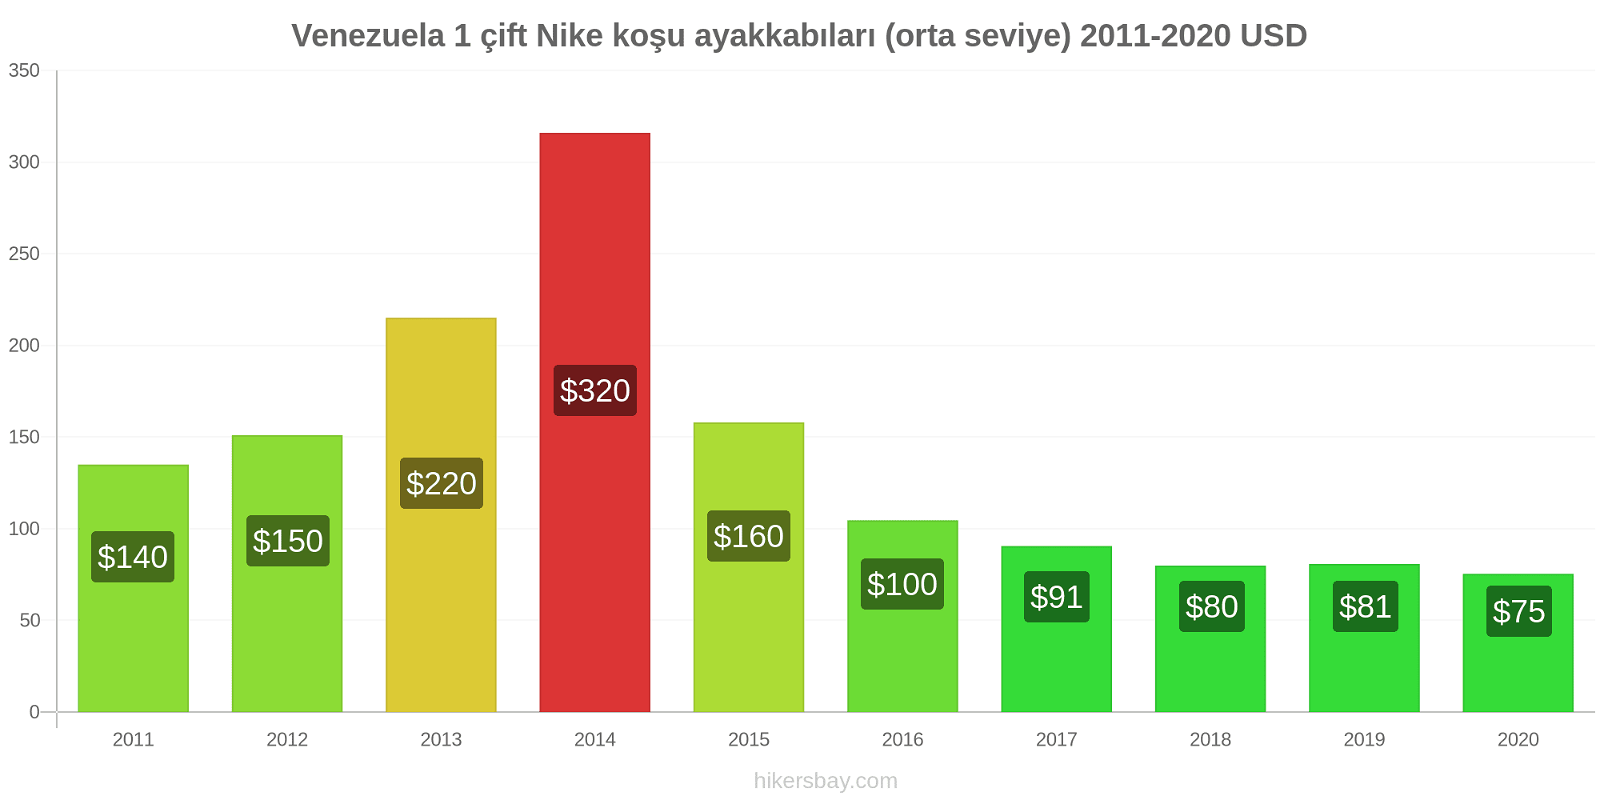 Venezuela fiyat değişiklikleri 1 çift Nike koşu ayakkabıları (orta seviye) hikersbay.com